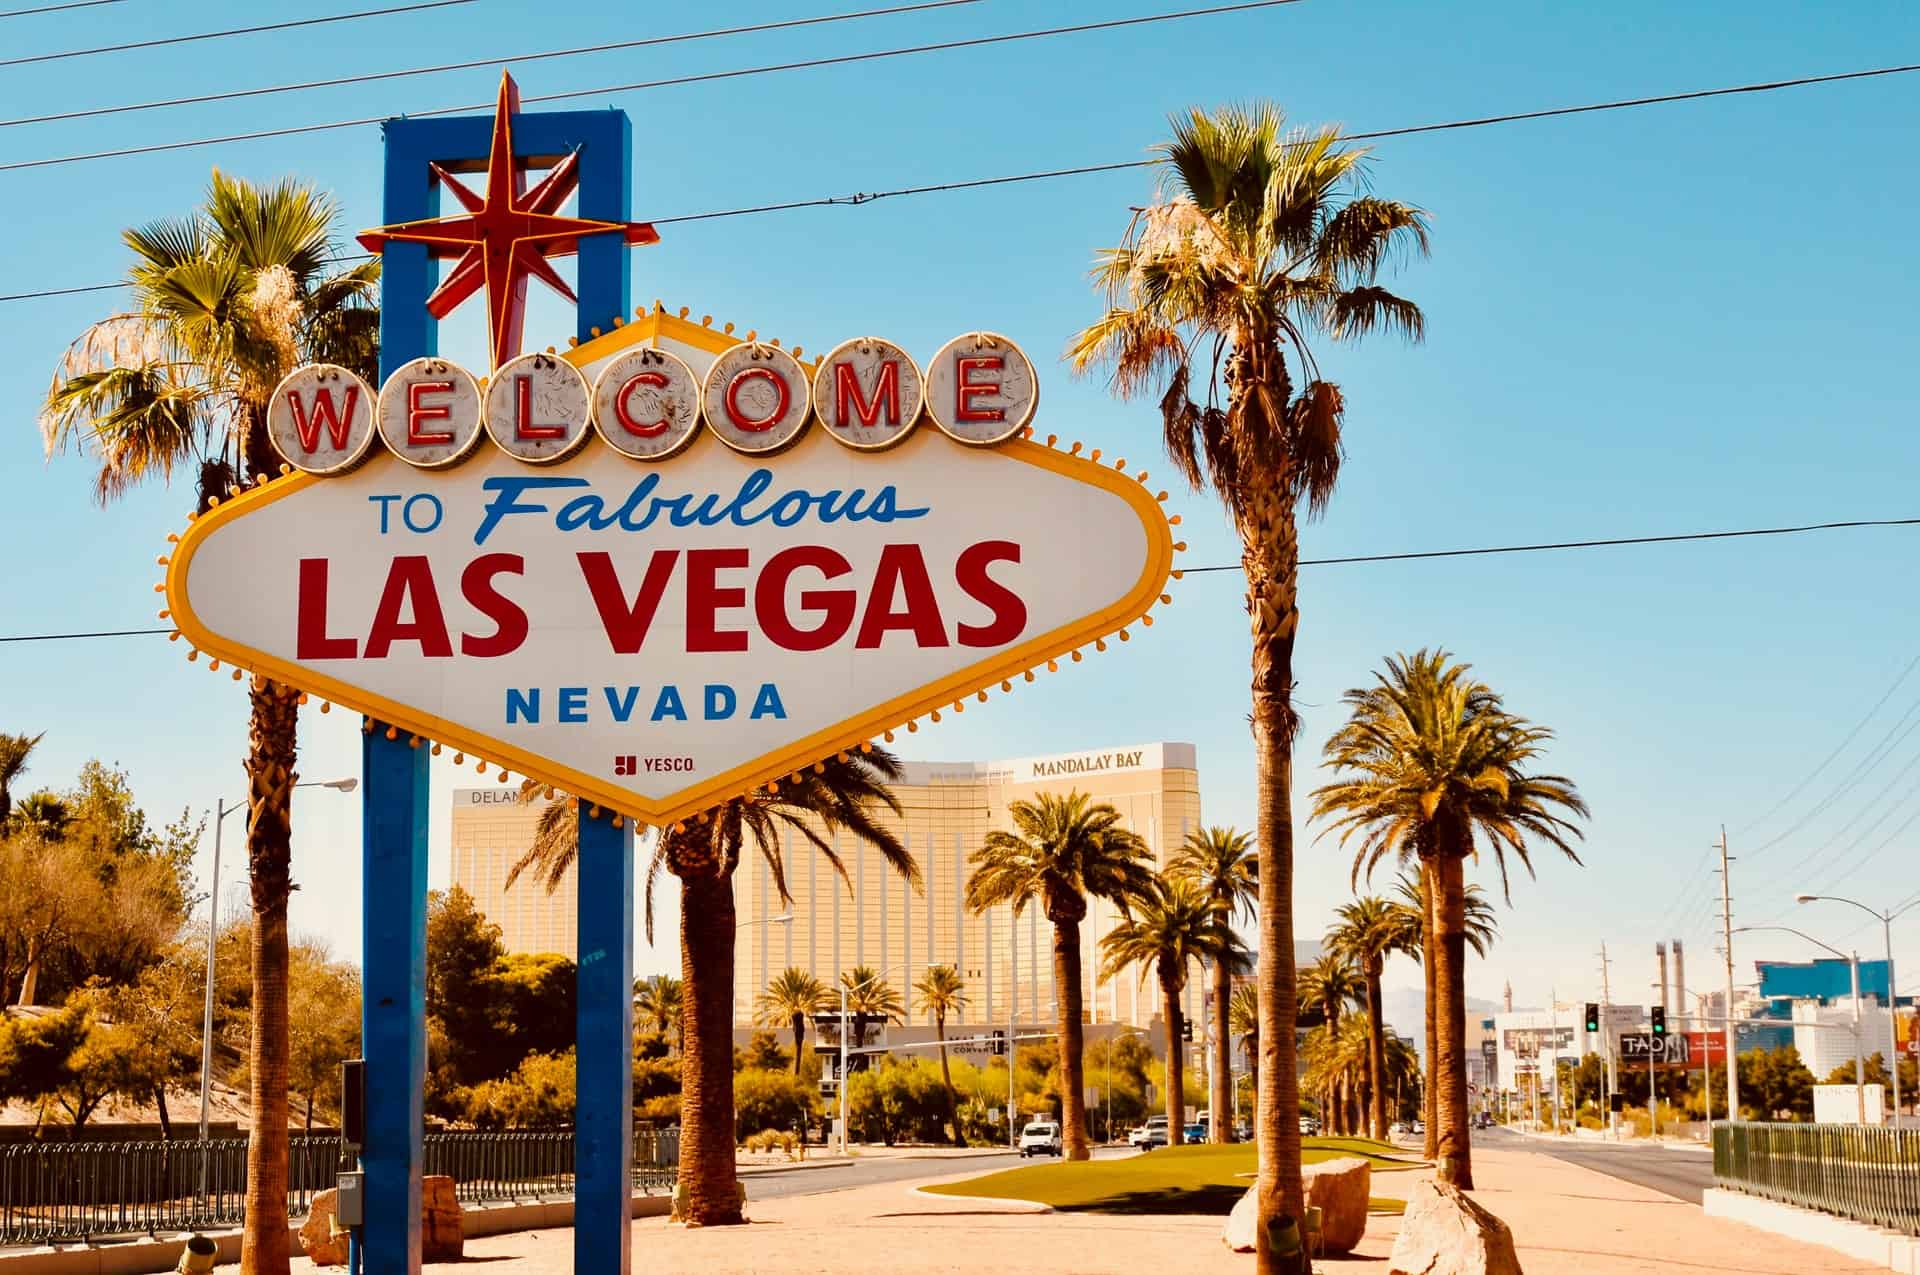 What tempts Las Vegas?